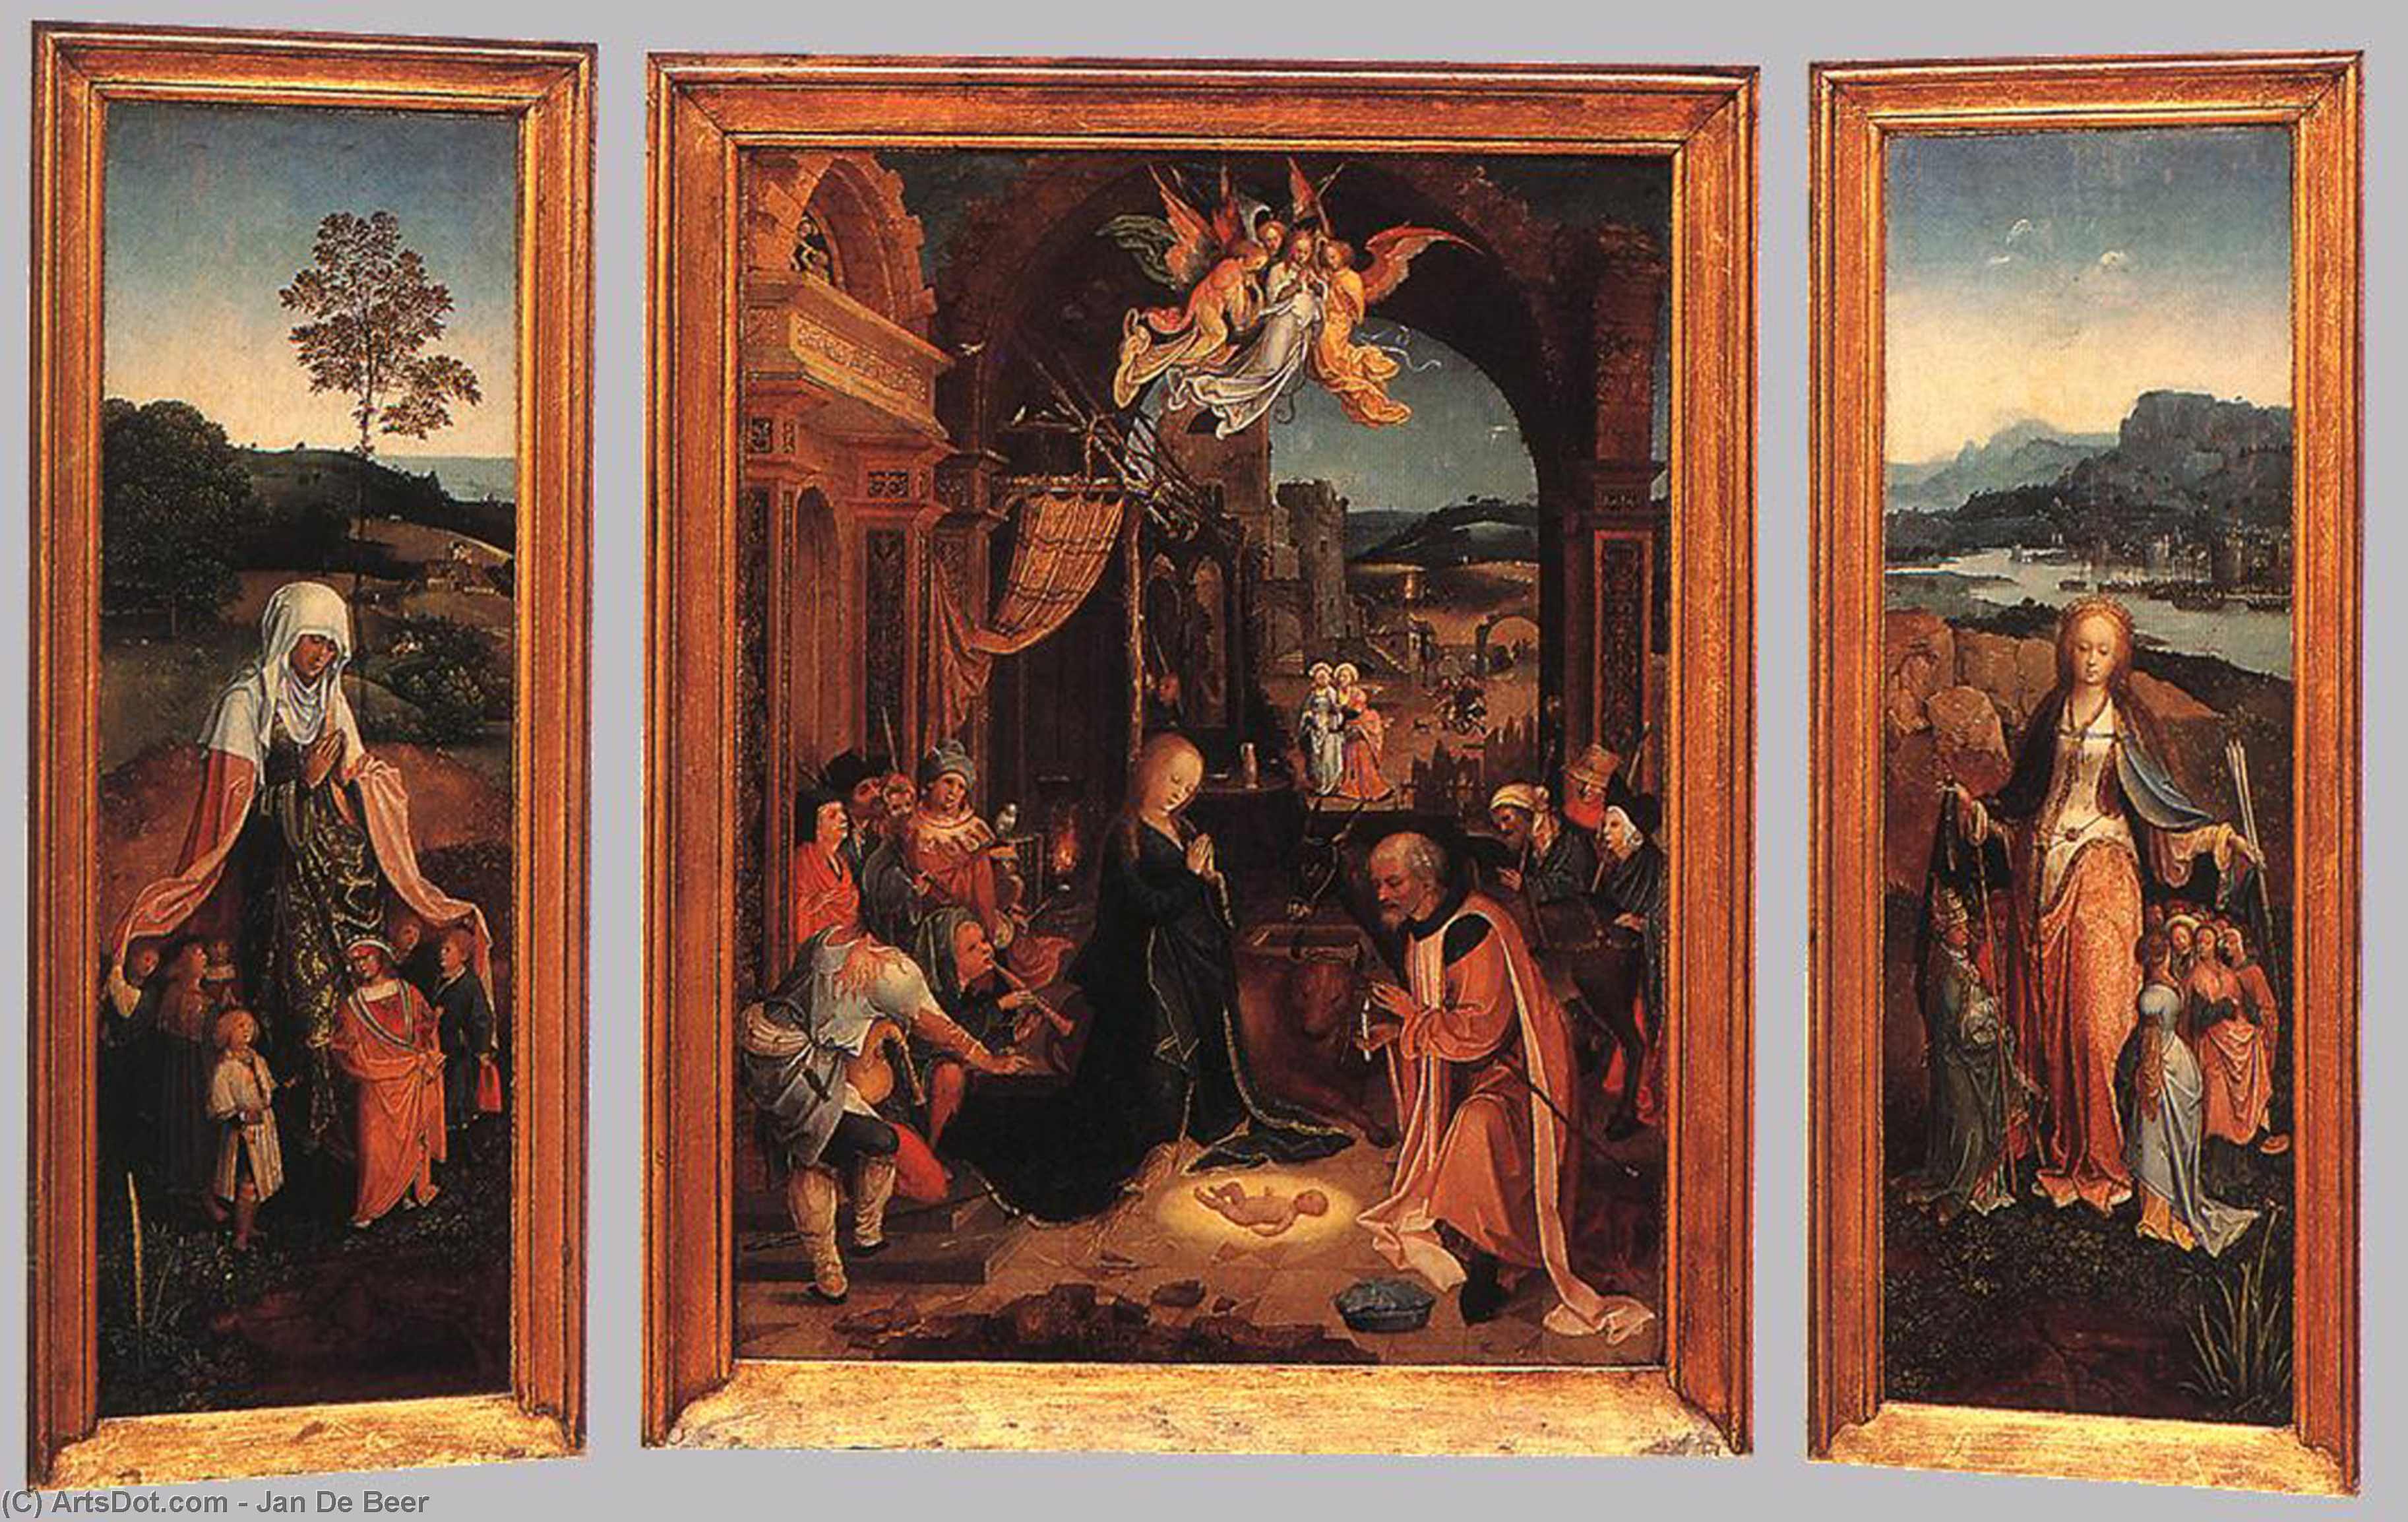 WikiOO.org - Encyclopedia of Fine Arts - Lukisan, Artwork Jan De Beer - Triptych